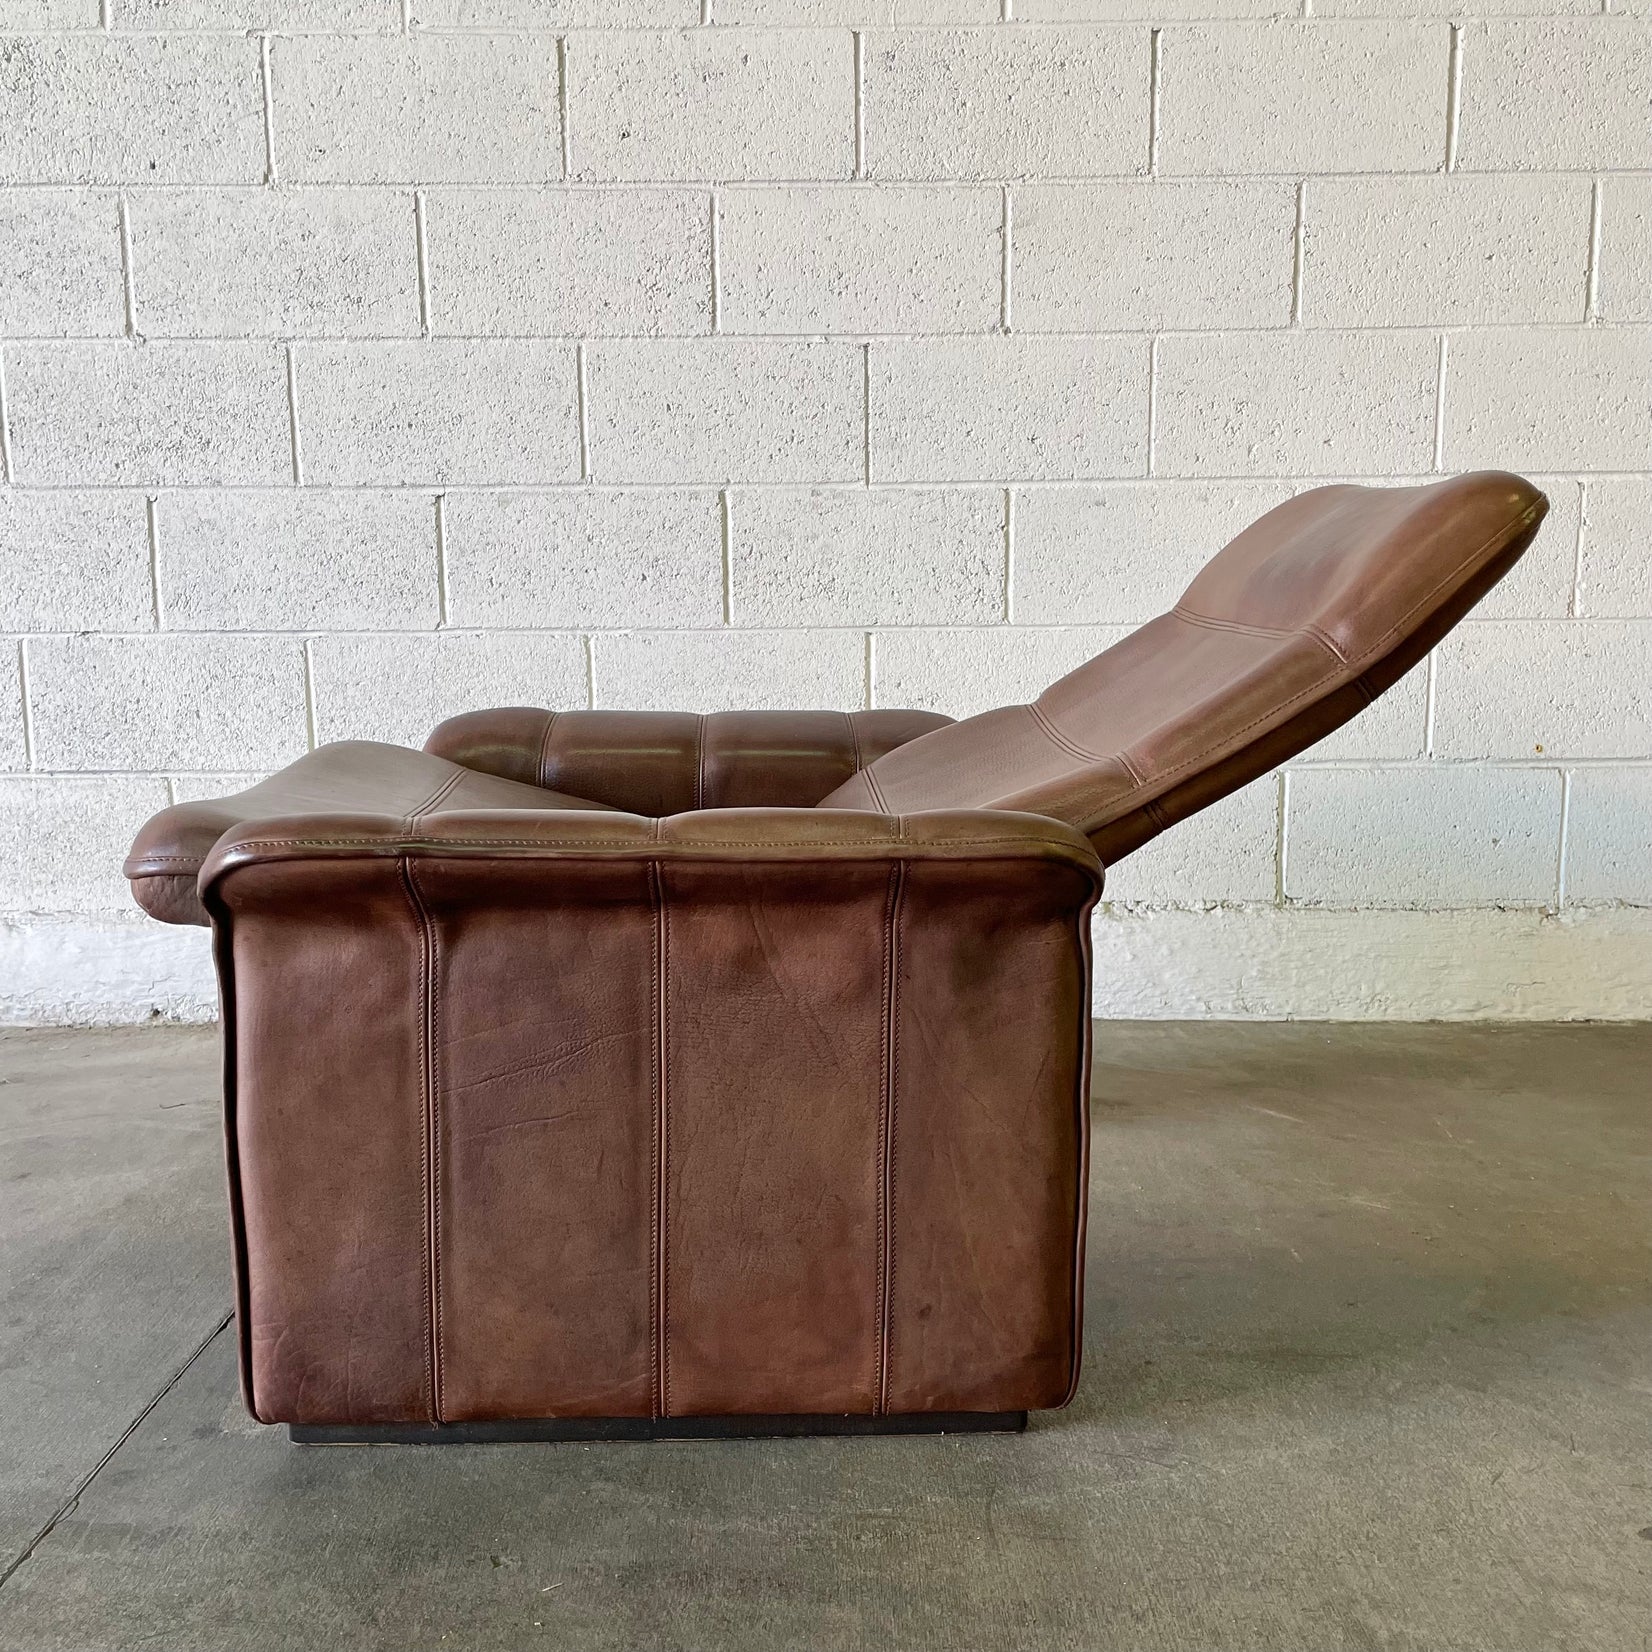 De Sede DS-50 Chocolate Brown Recliner Chair